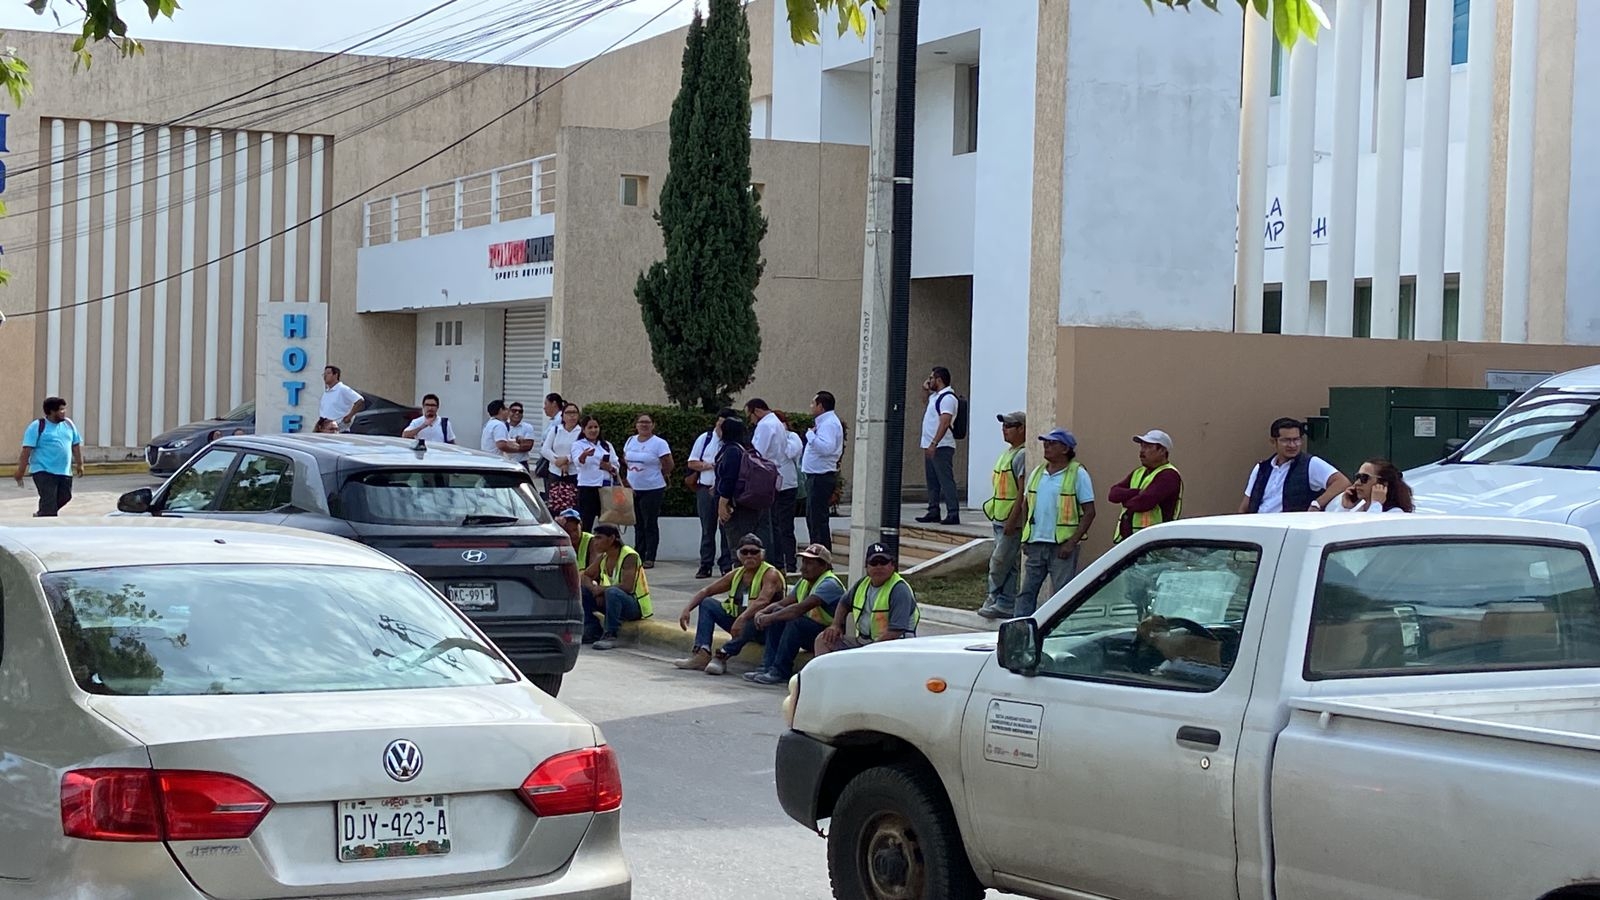 Reportan amenaza de bomba en la Casa de Justicia de Campeche: EN VIVO